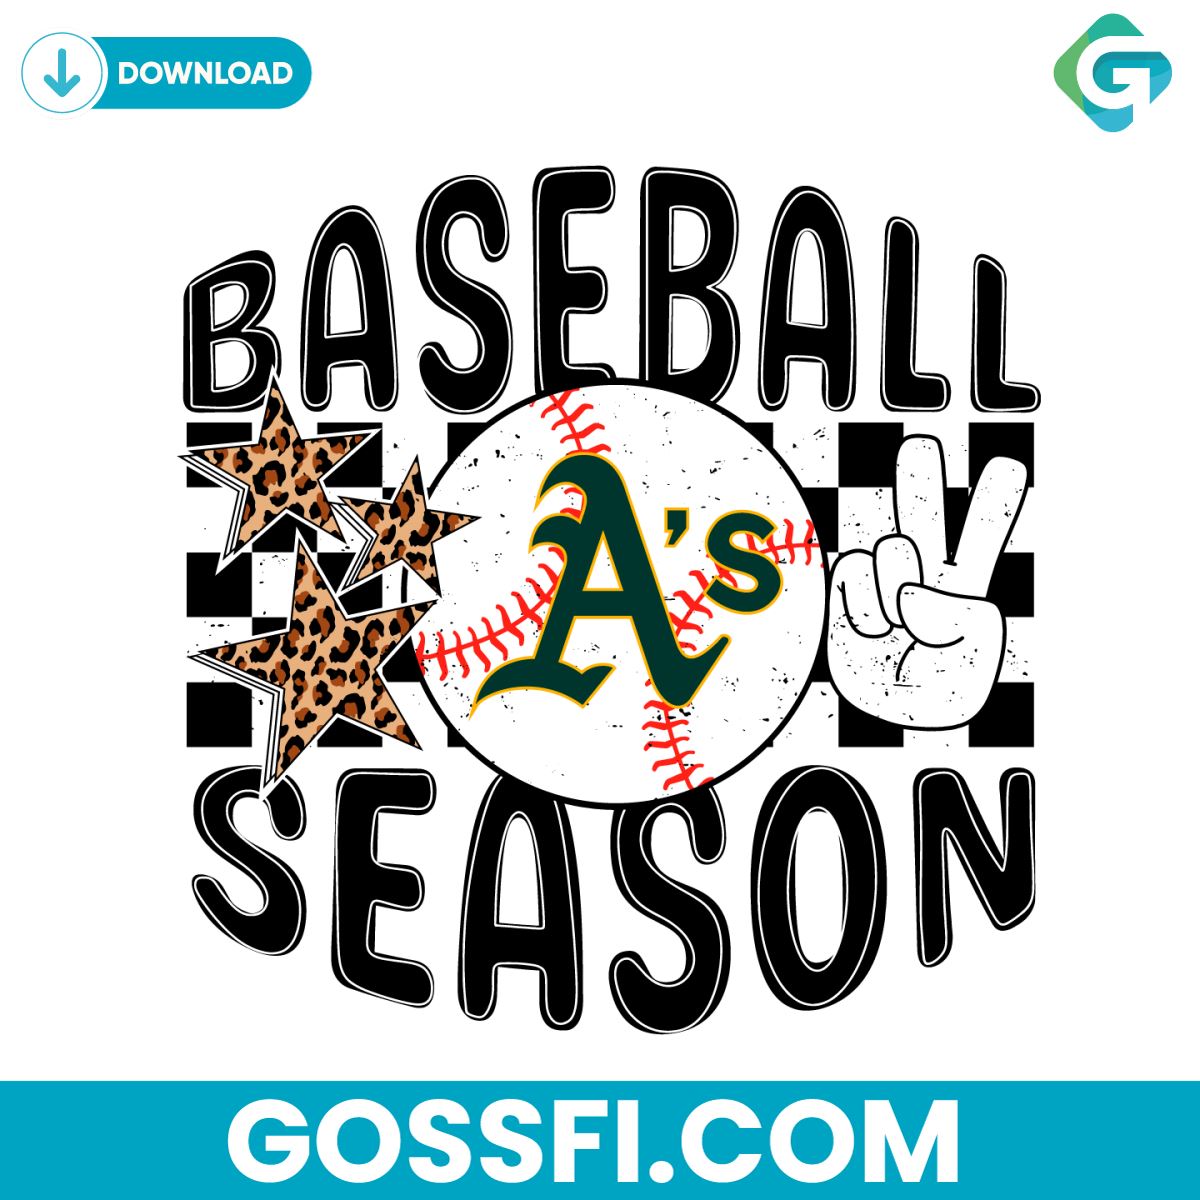 baseball-season-oakland-athletics-svg-digital-download